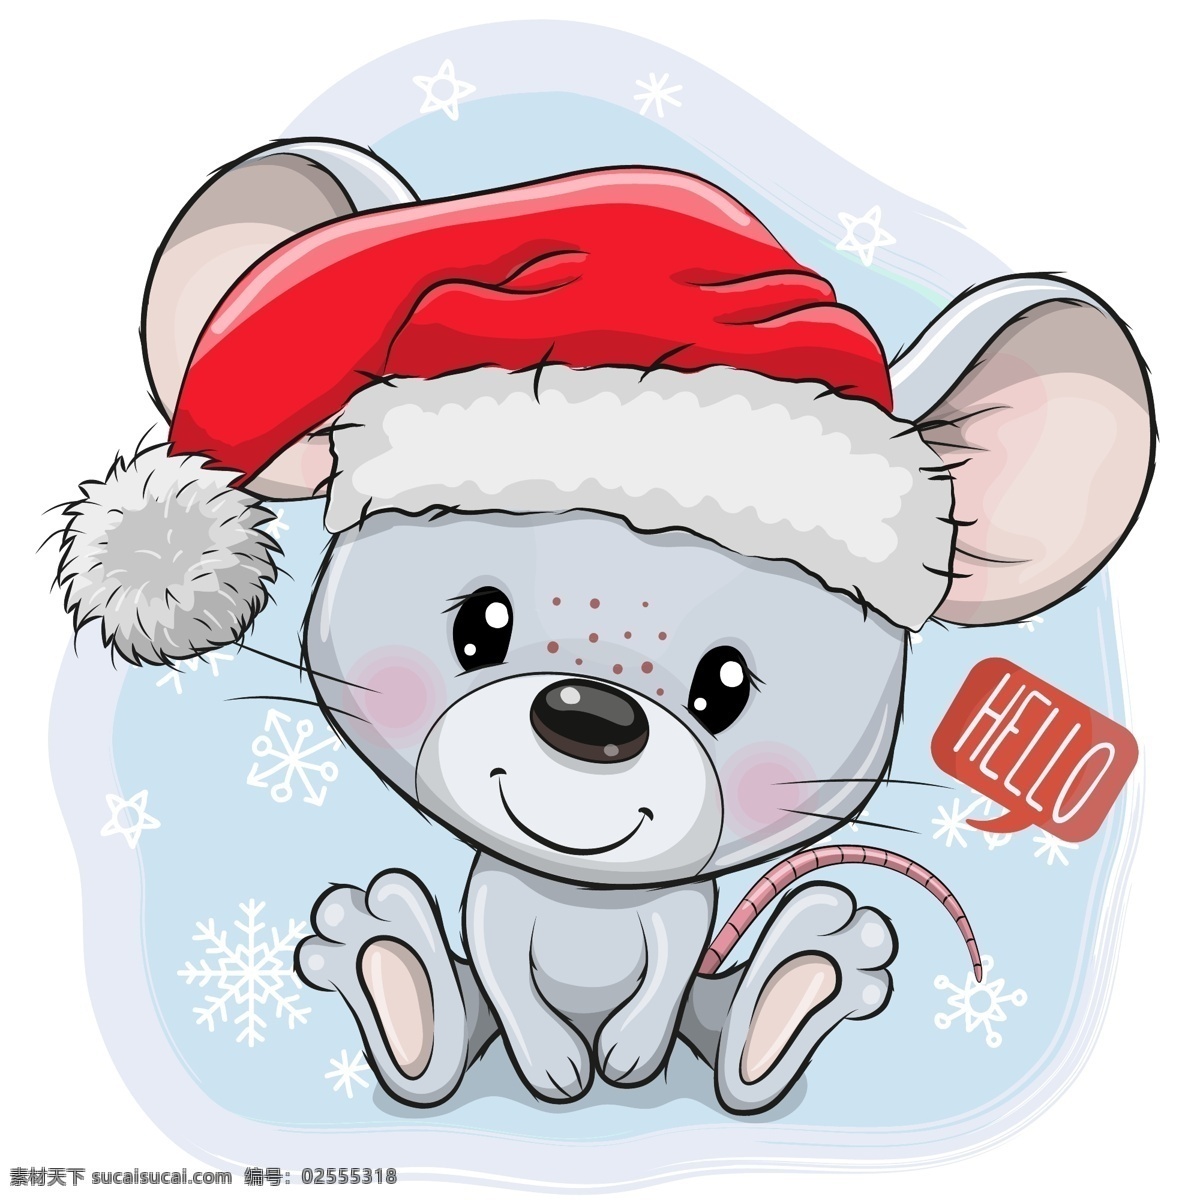 卡通圣诞 老鼠设计 矢量素材 卡通 圣诞节 老鼠 雪花 星星 圣诞帽 语言气泡 矢量图 ai格式